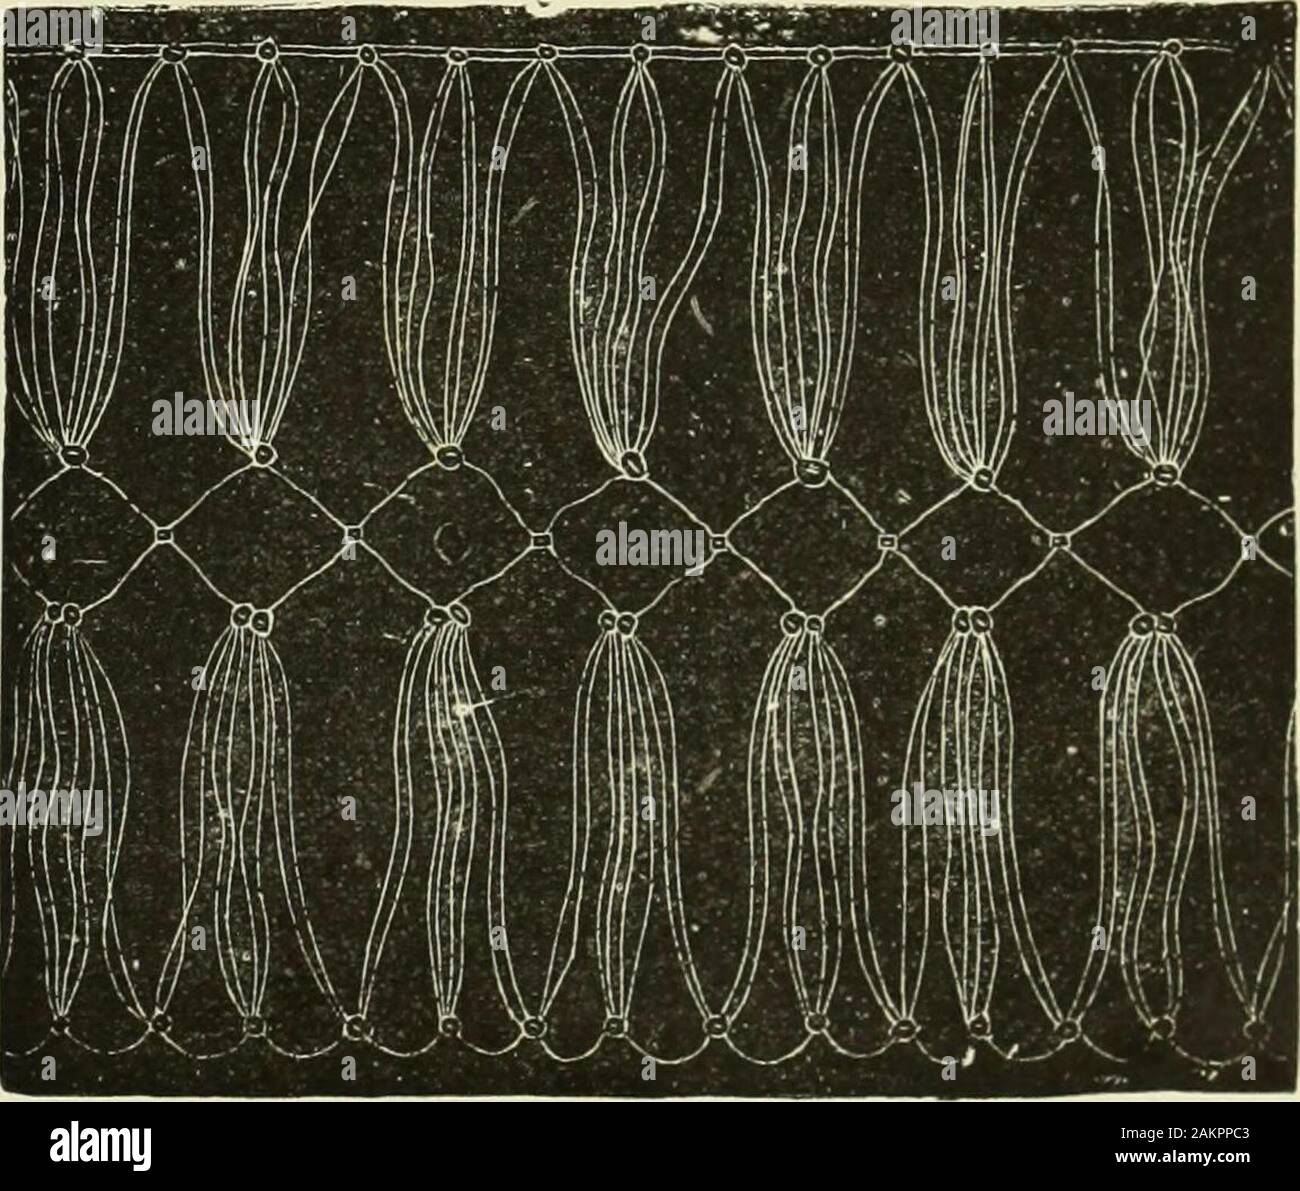 El diccionario de costura : una enciclopedia de artístico, simple y  elegante costurero tratar plenamente con los detalles de todos los puntos  de sutura empleada, el método de trabajo, los materiales utilizados,